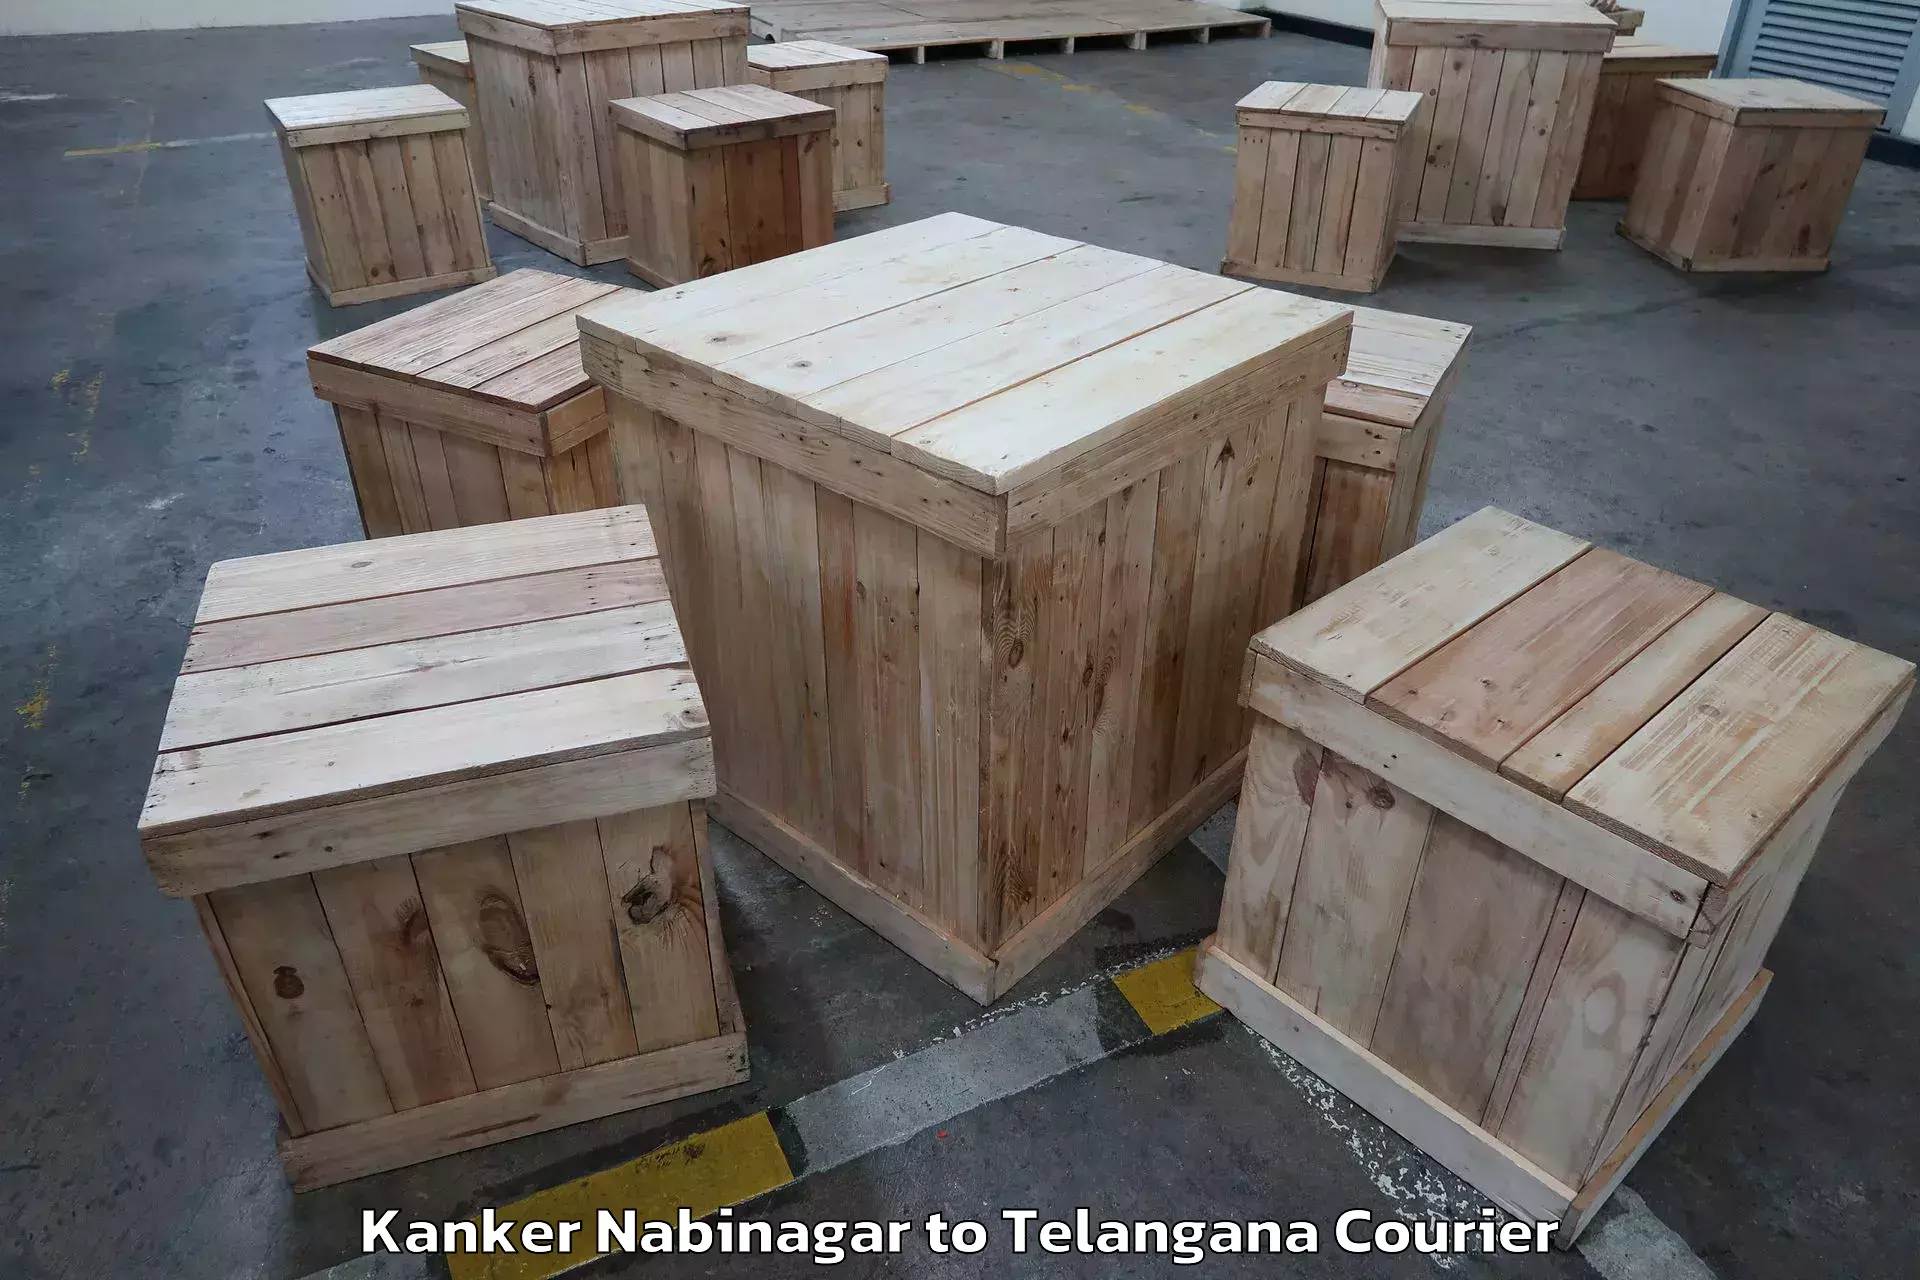 Trusted moving company Kanker Nabinagar to Telangana